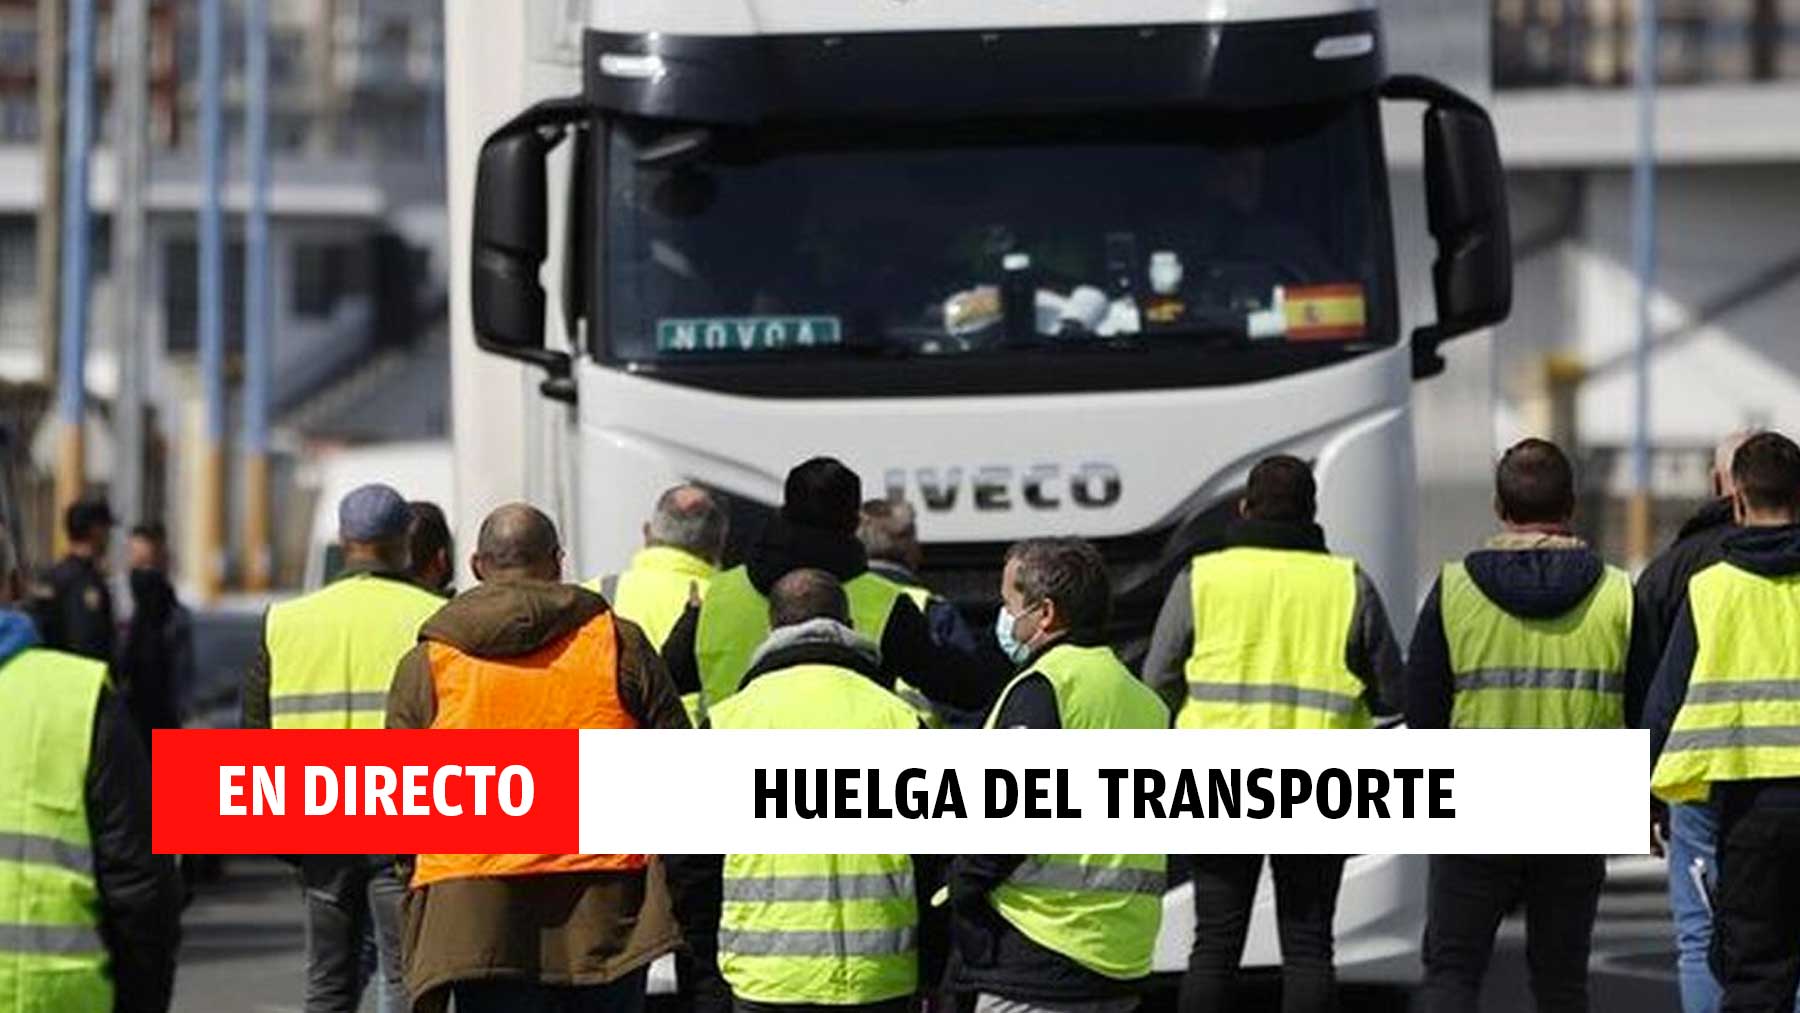 Huelga de transporte en España, en directo